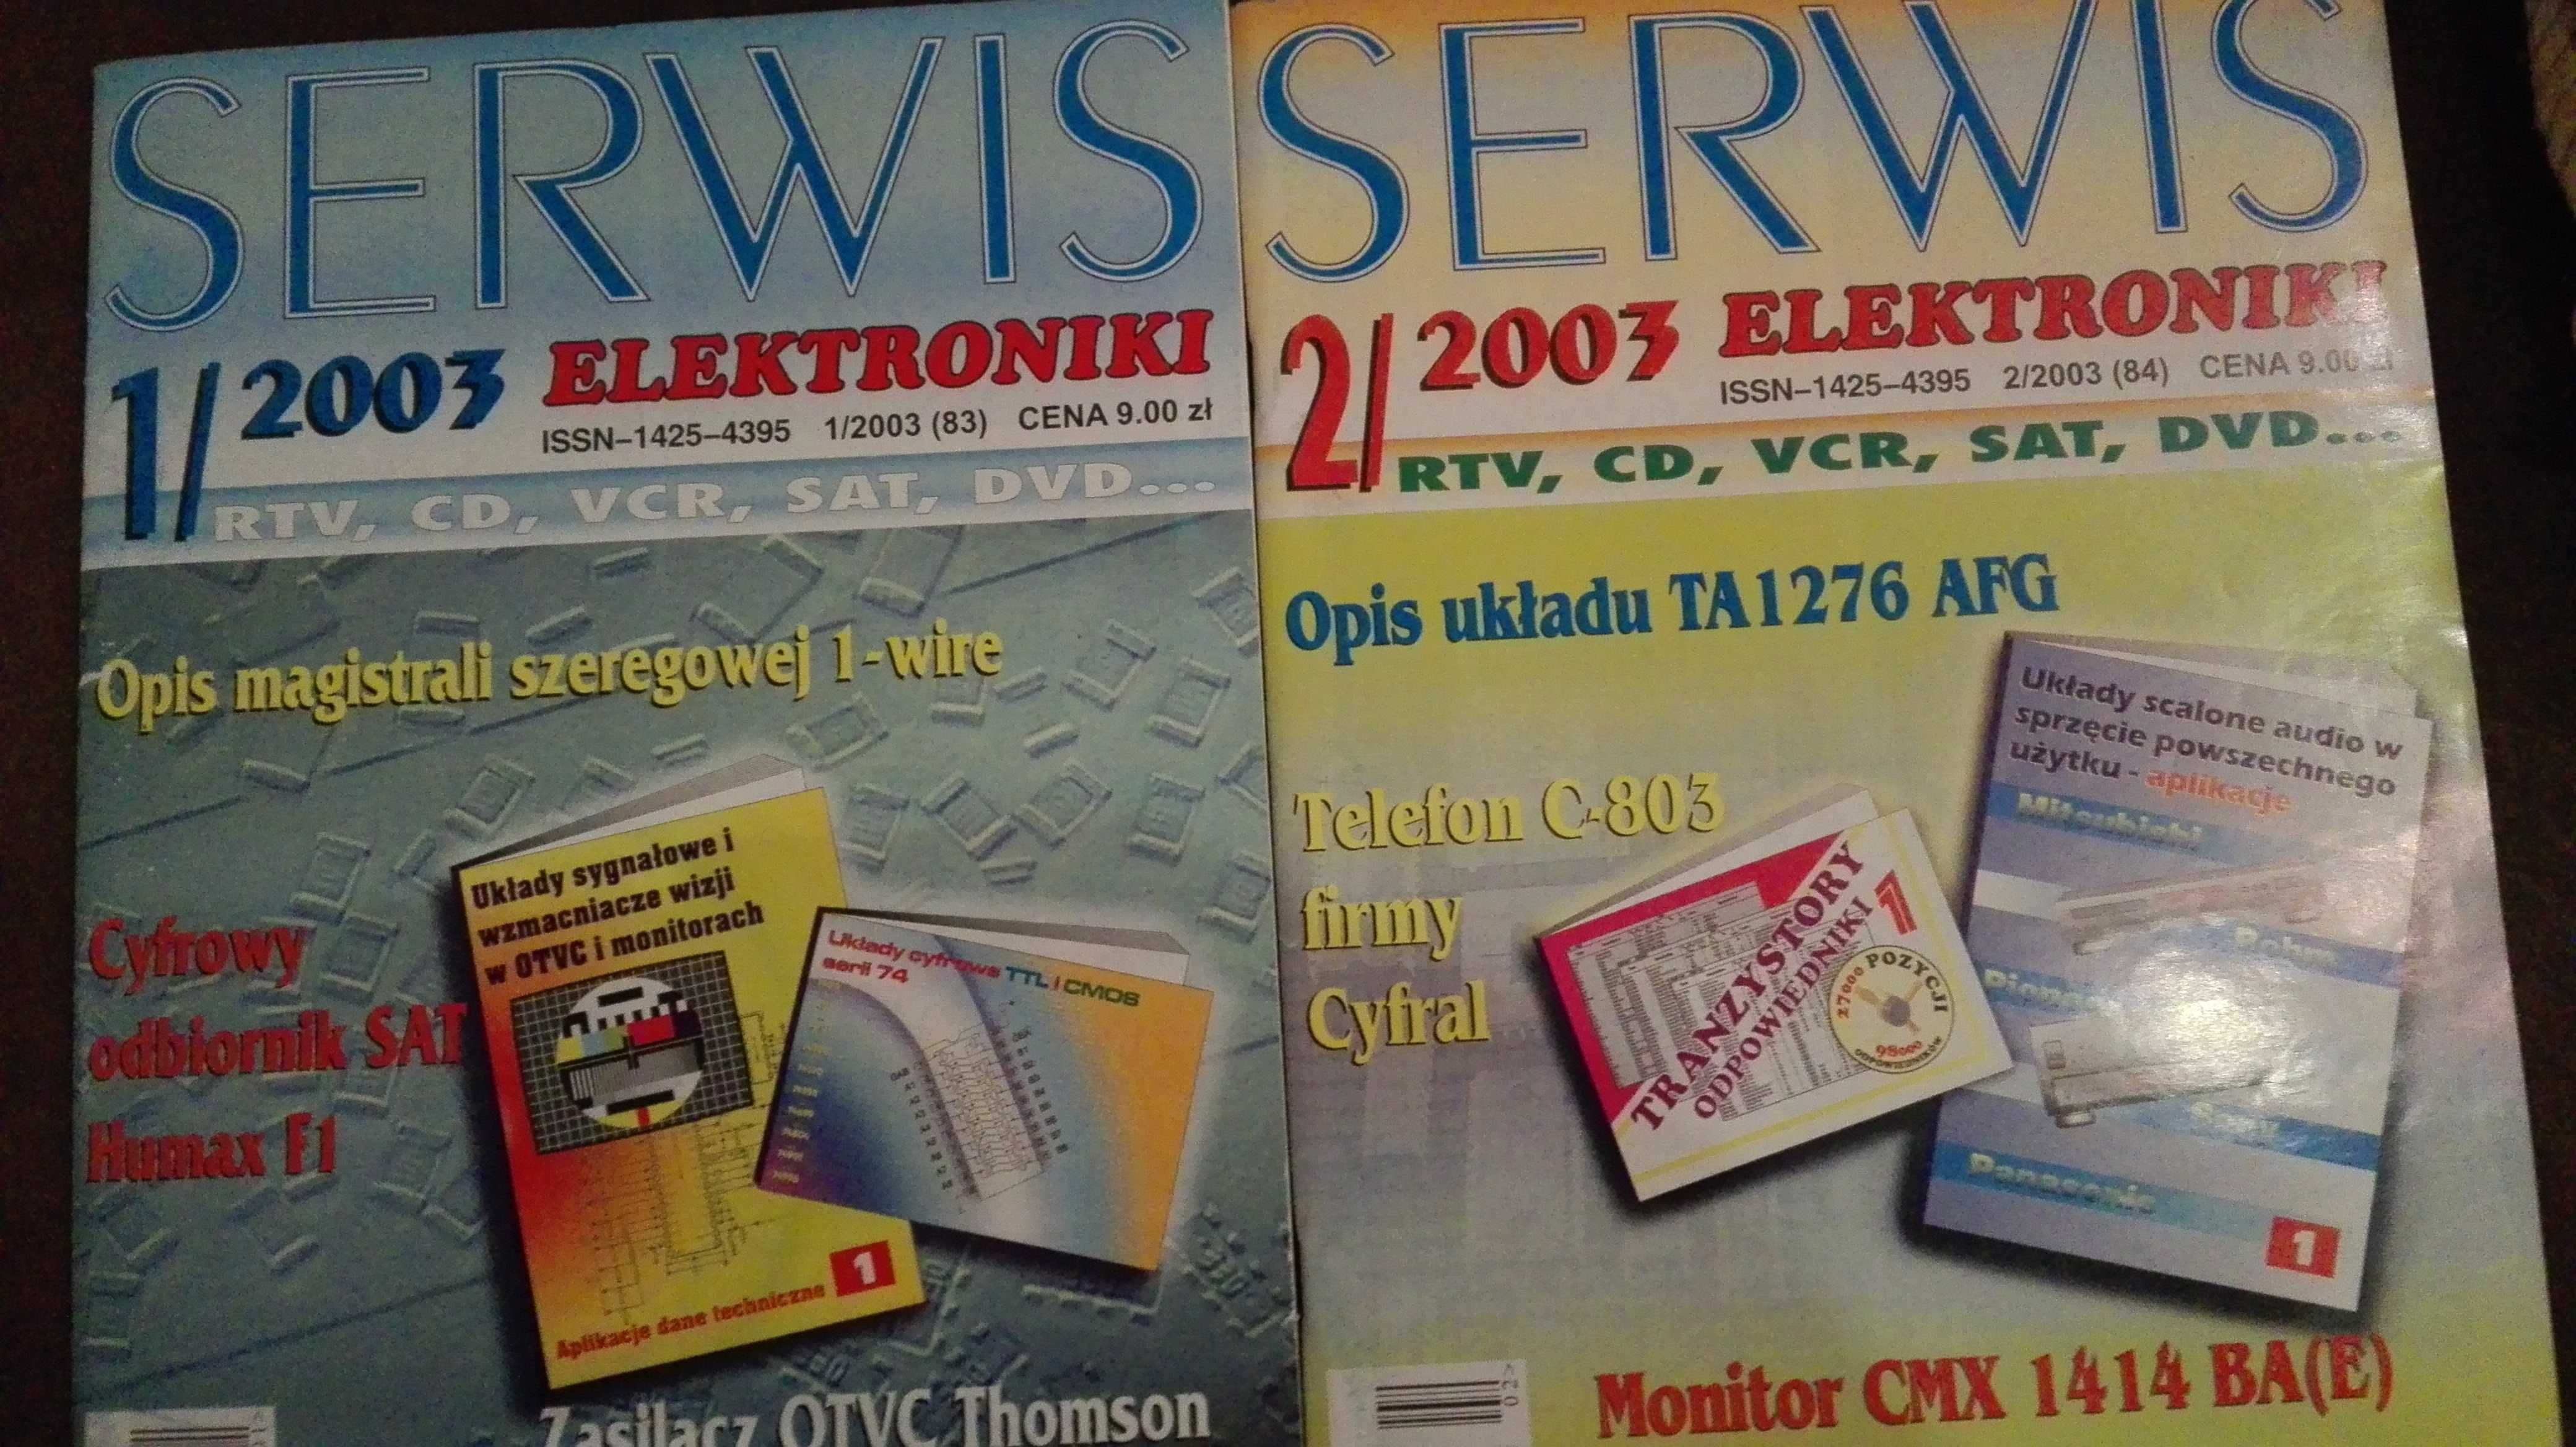 Czasopismo "Serwis Elektroniki" - rocznik 2003